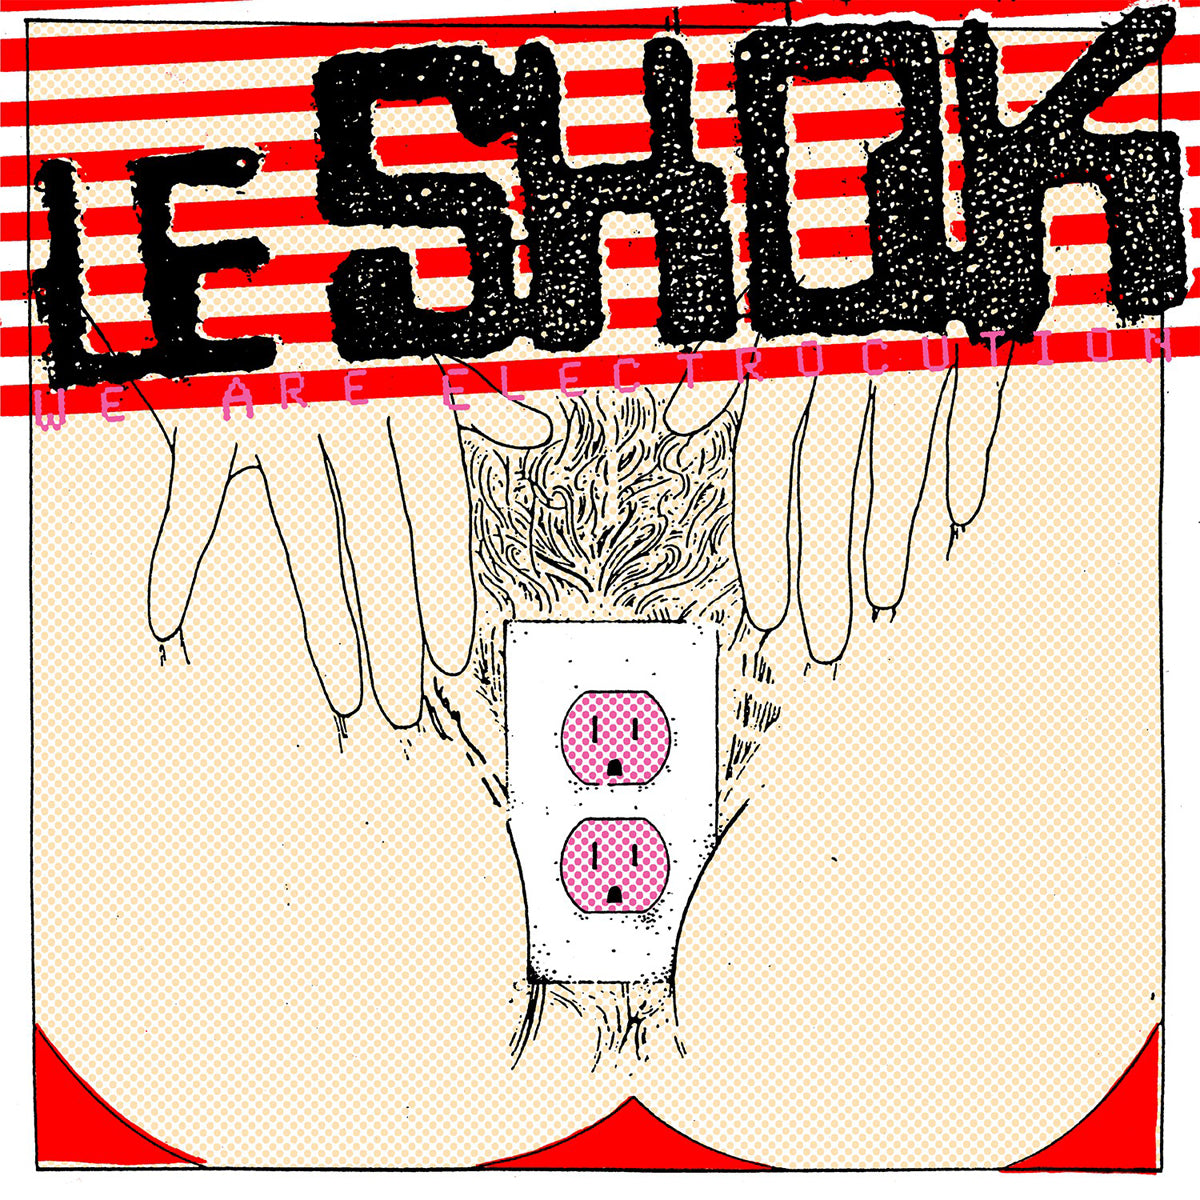 Le Shok- We Are Electrocution LP ~REISSUE!